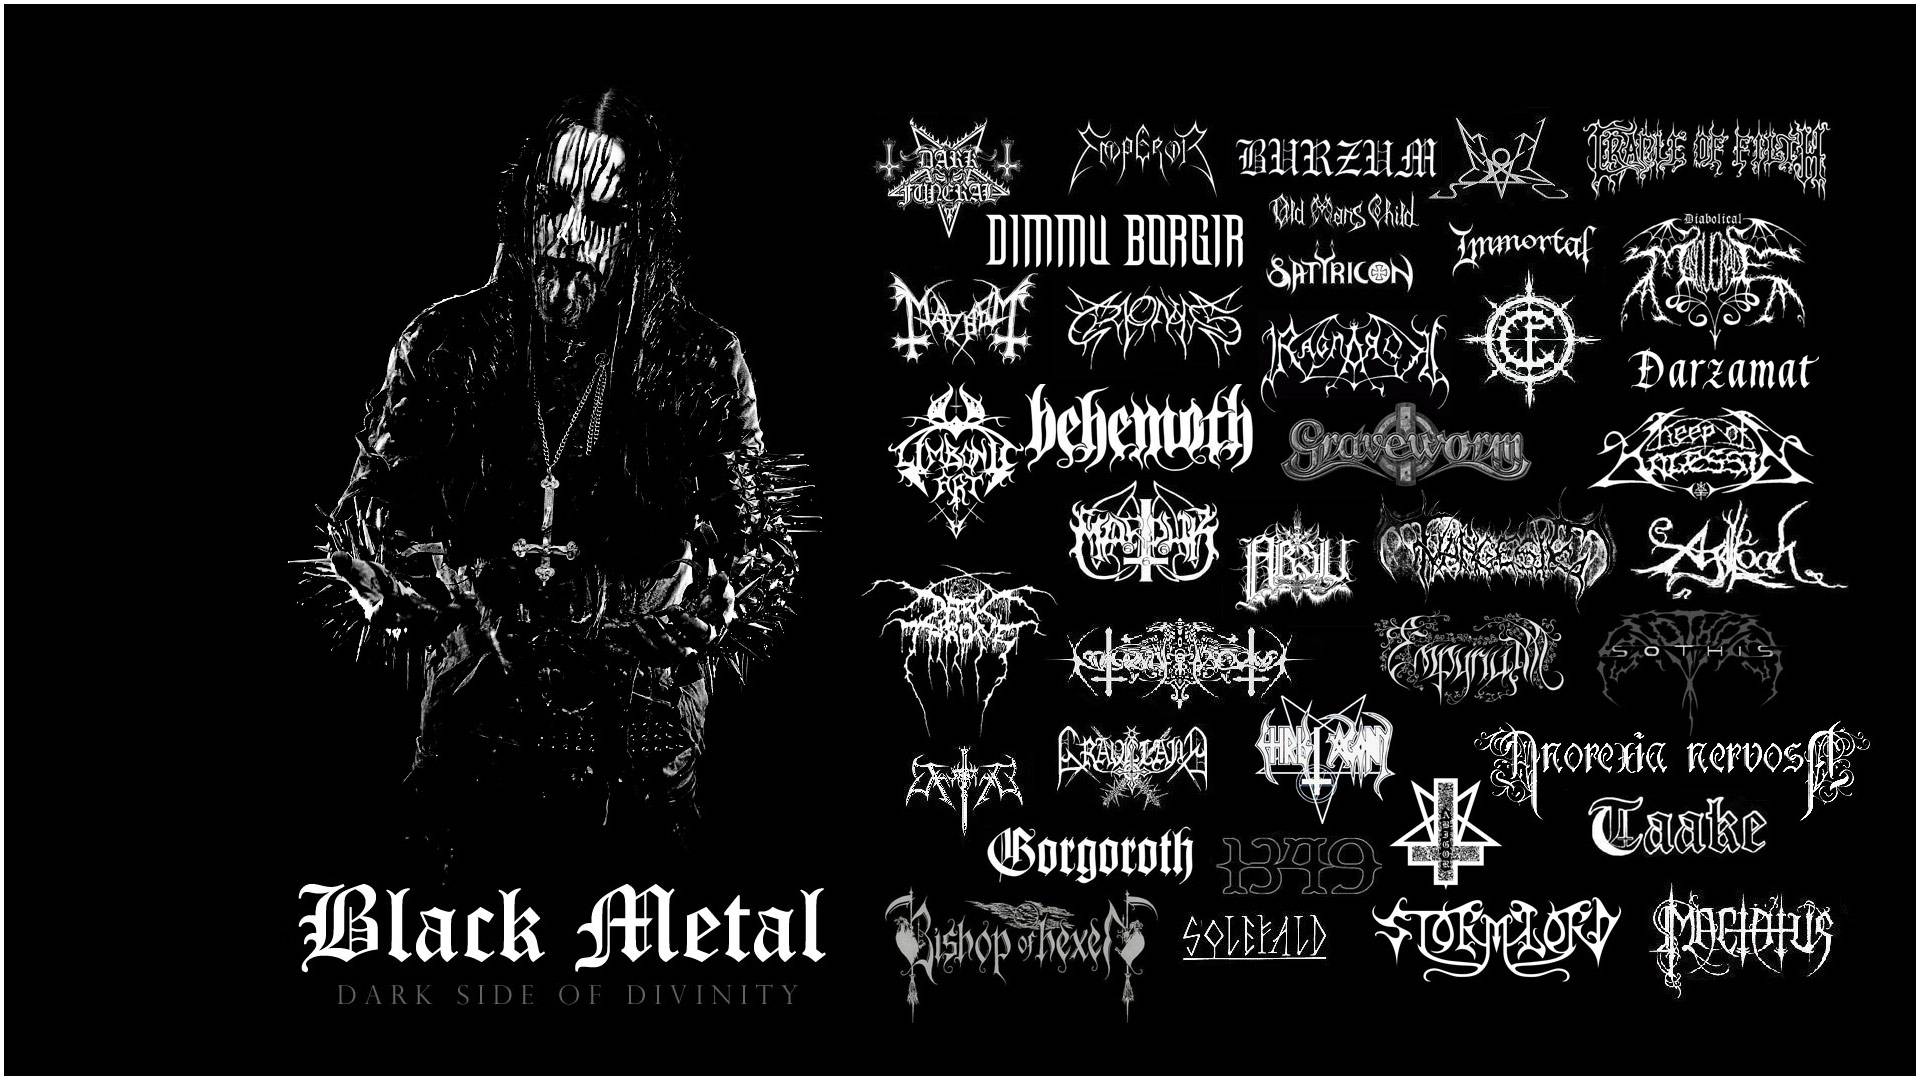 Music Black Metal Image Wallpaper Just Fcking Awesome Bands Tweet